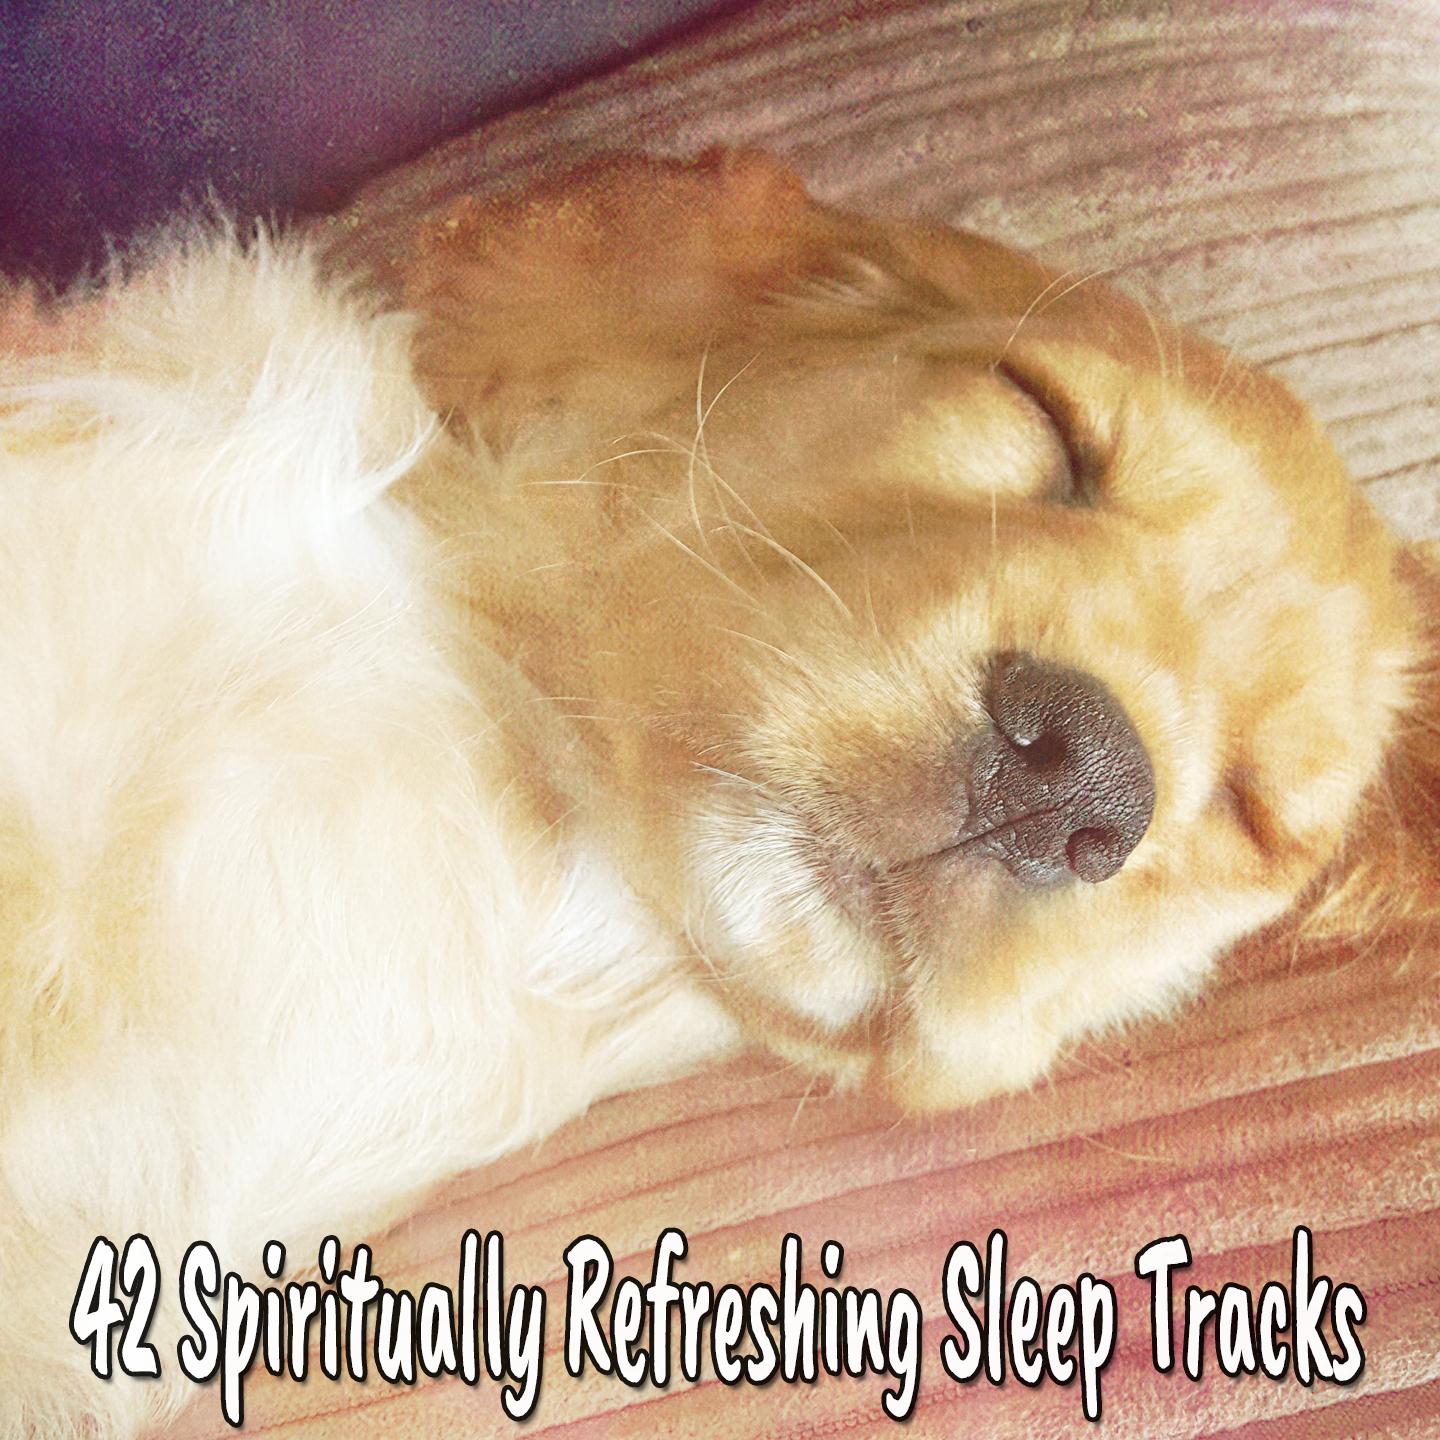 42 Spiritually Refreshing Sleep Tracks